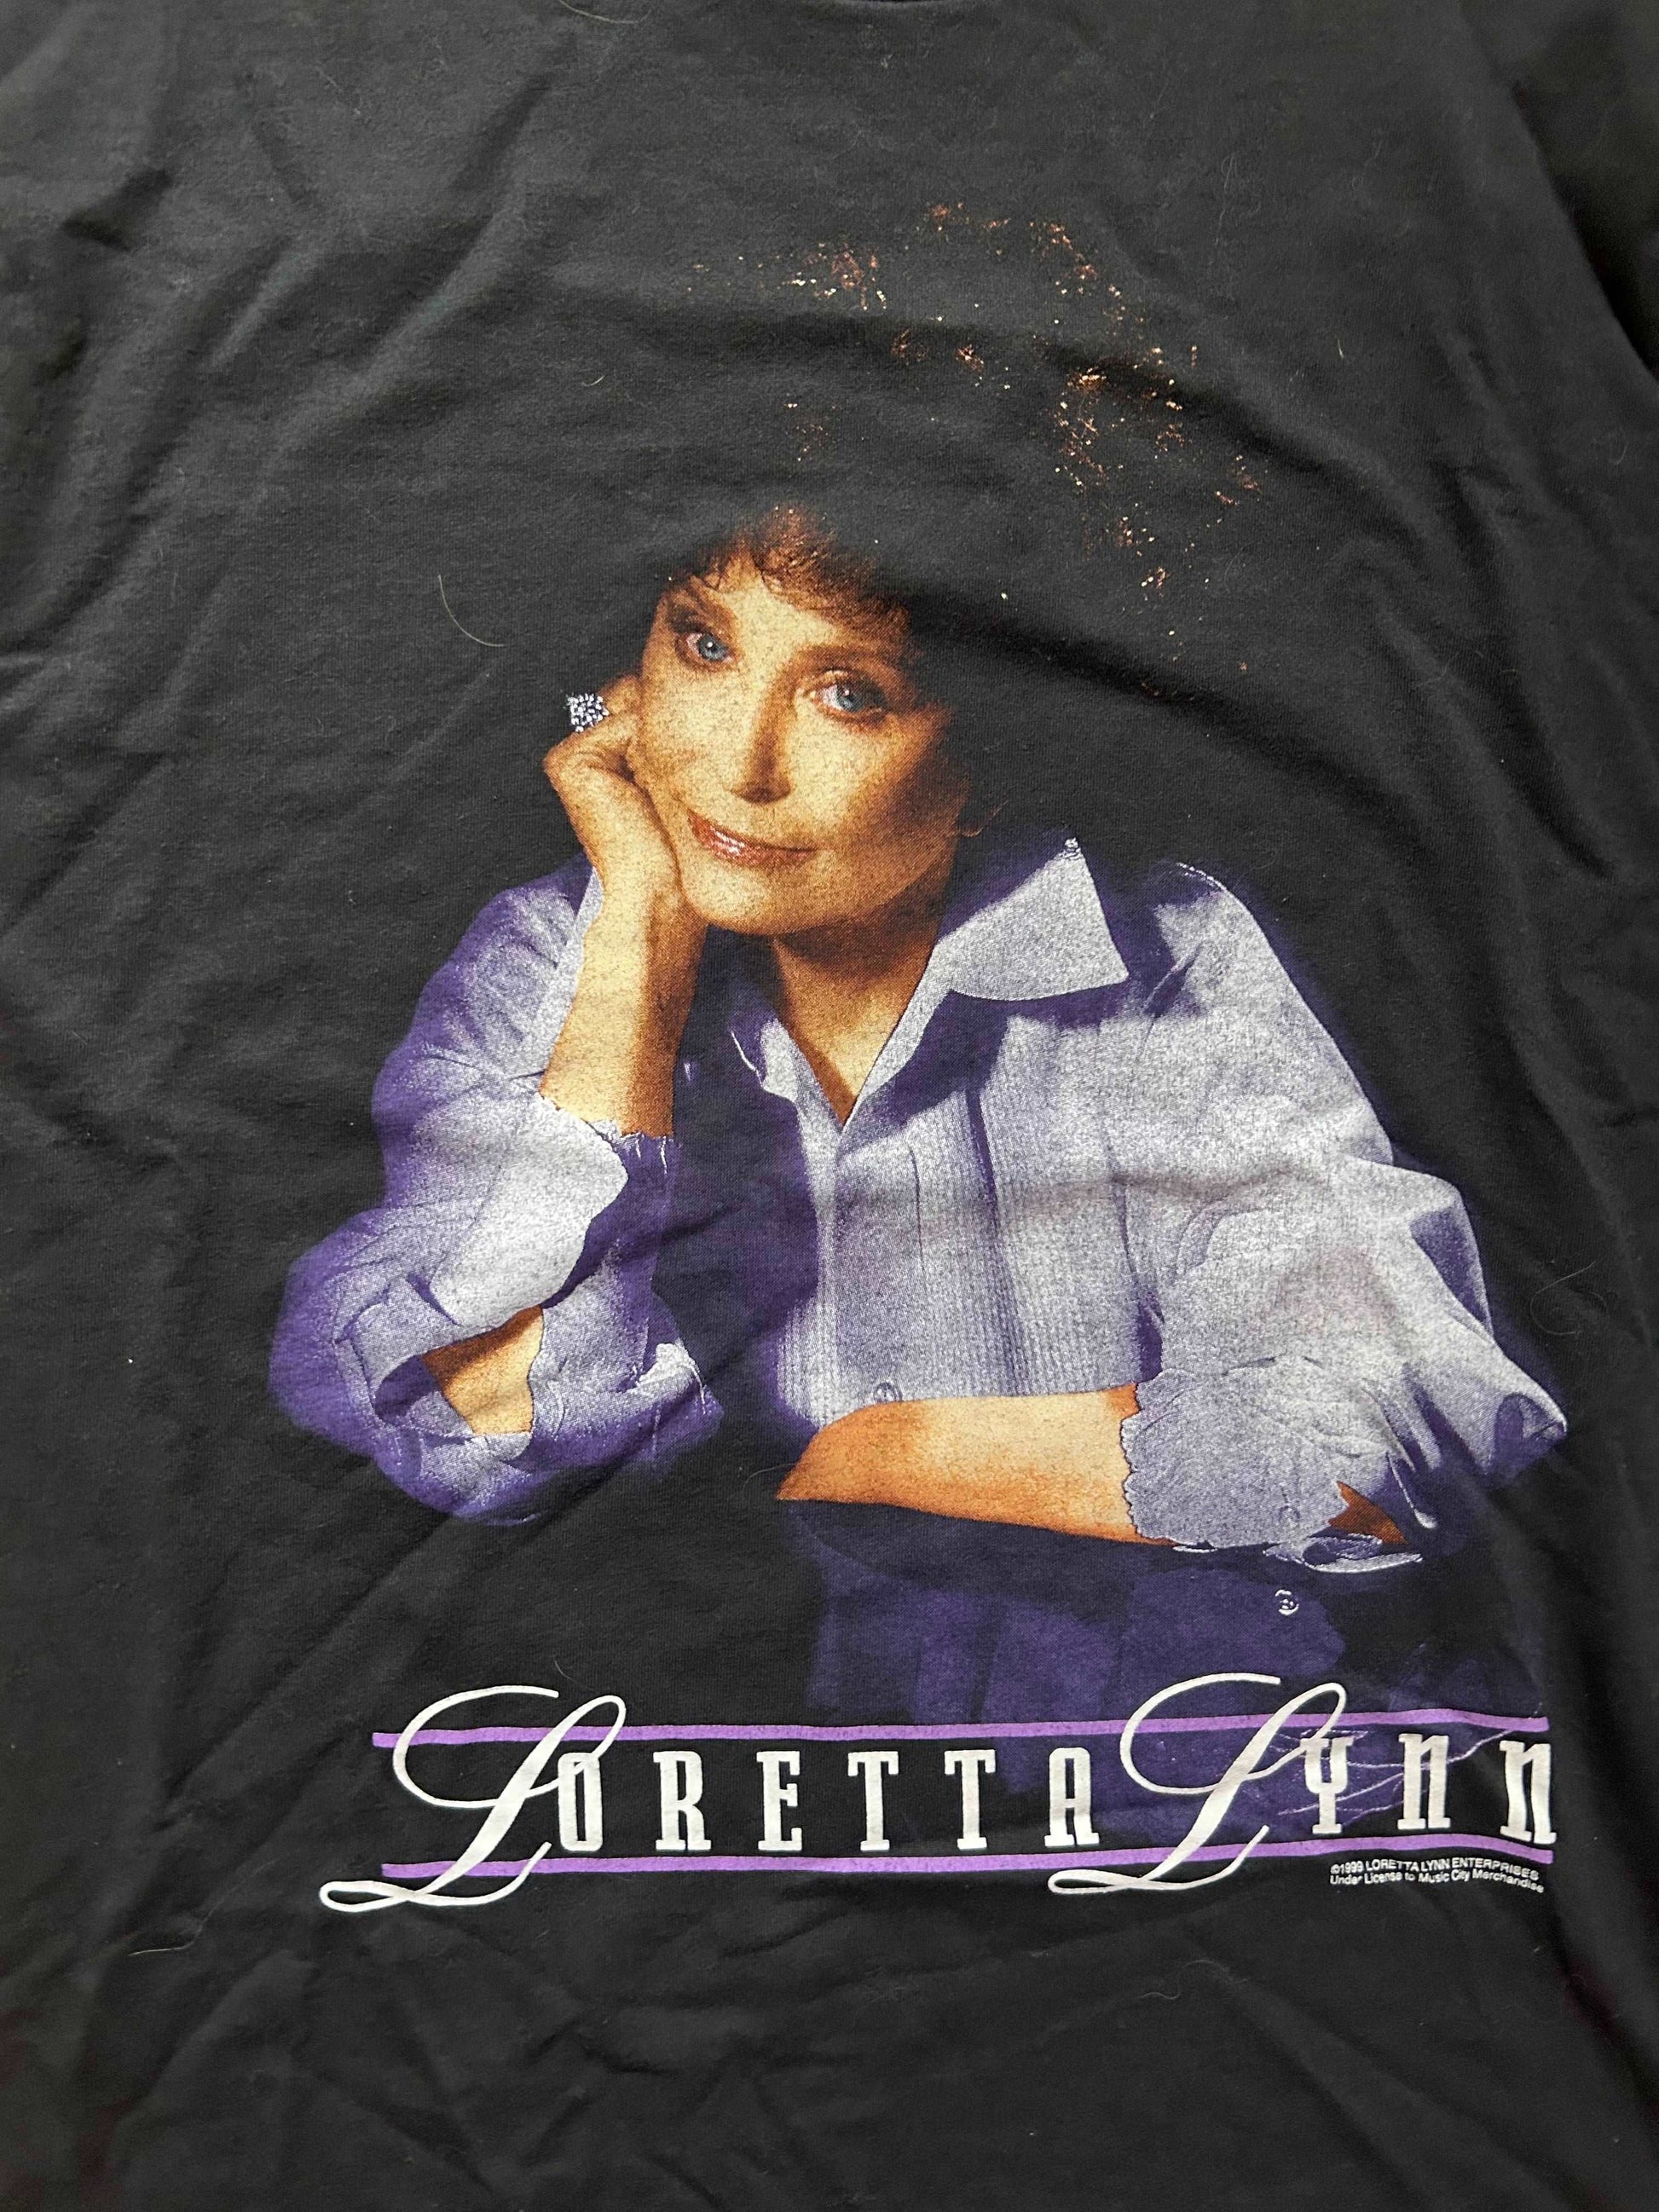 1999 Loretta Lynn Tour Shirt Size - L